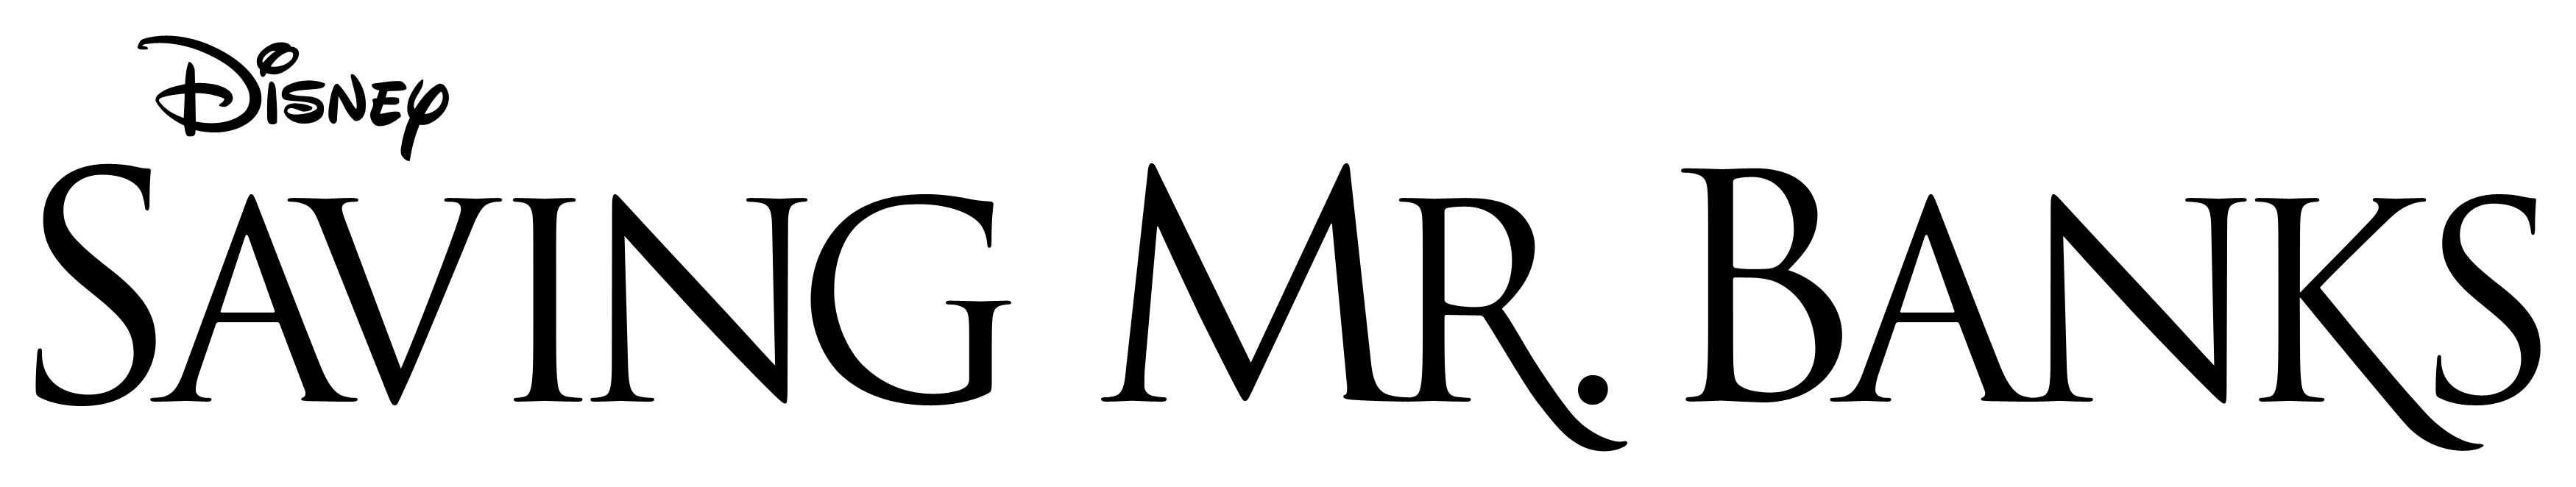 SAVING MR. BANKS Logo